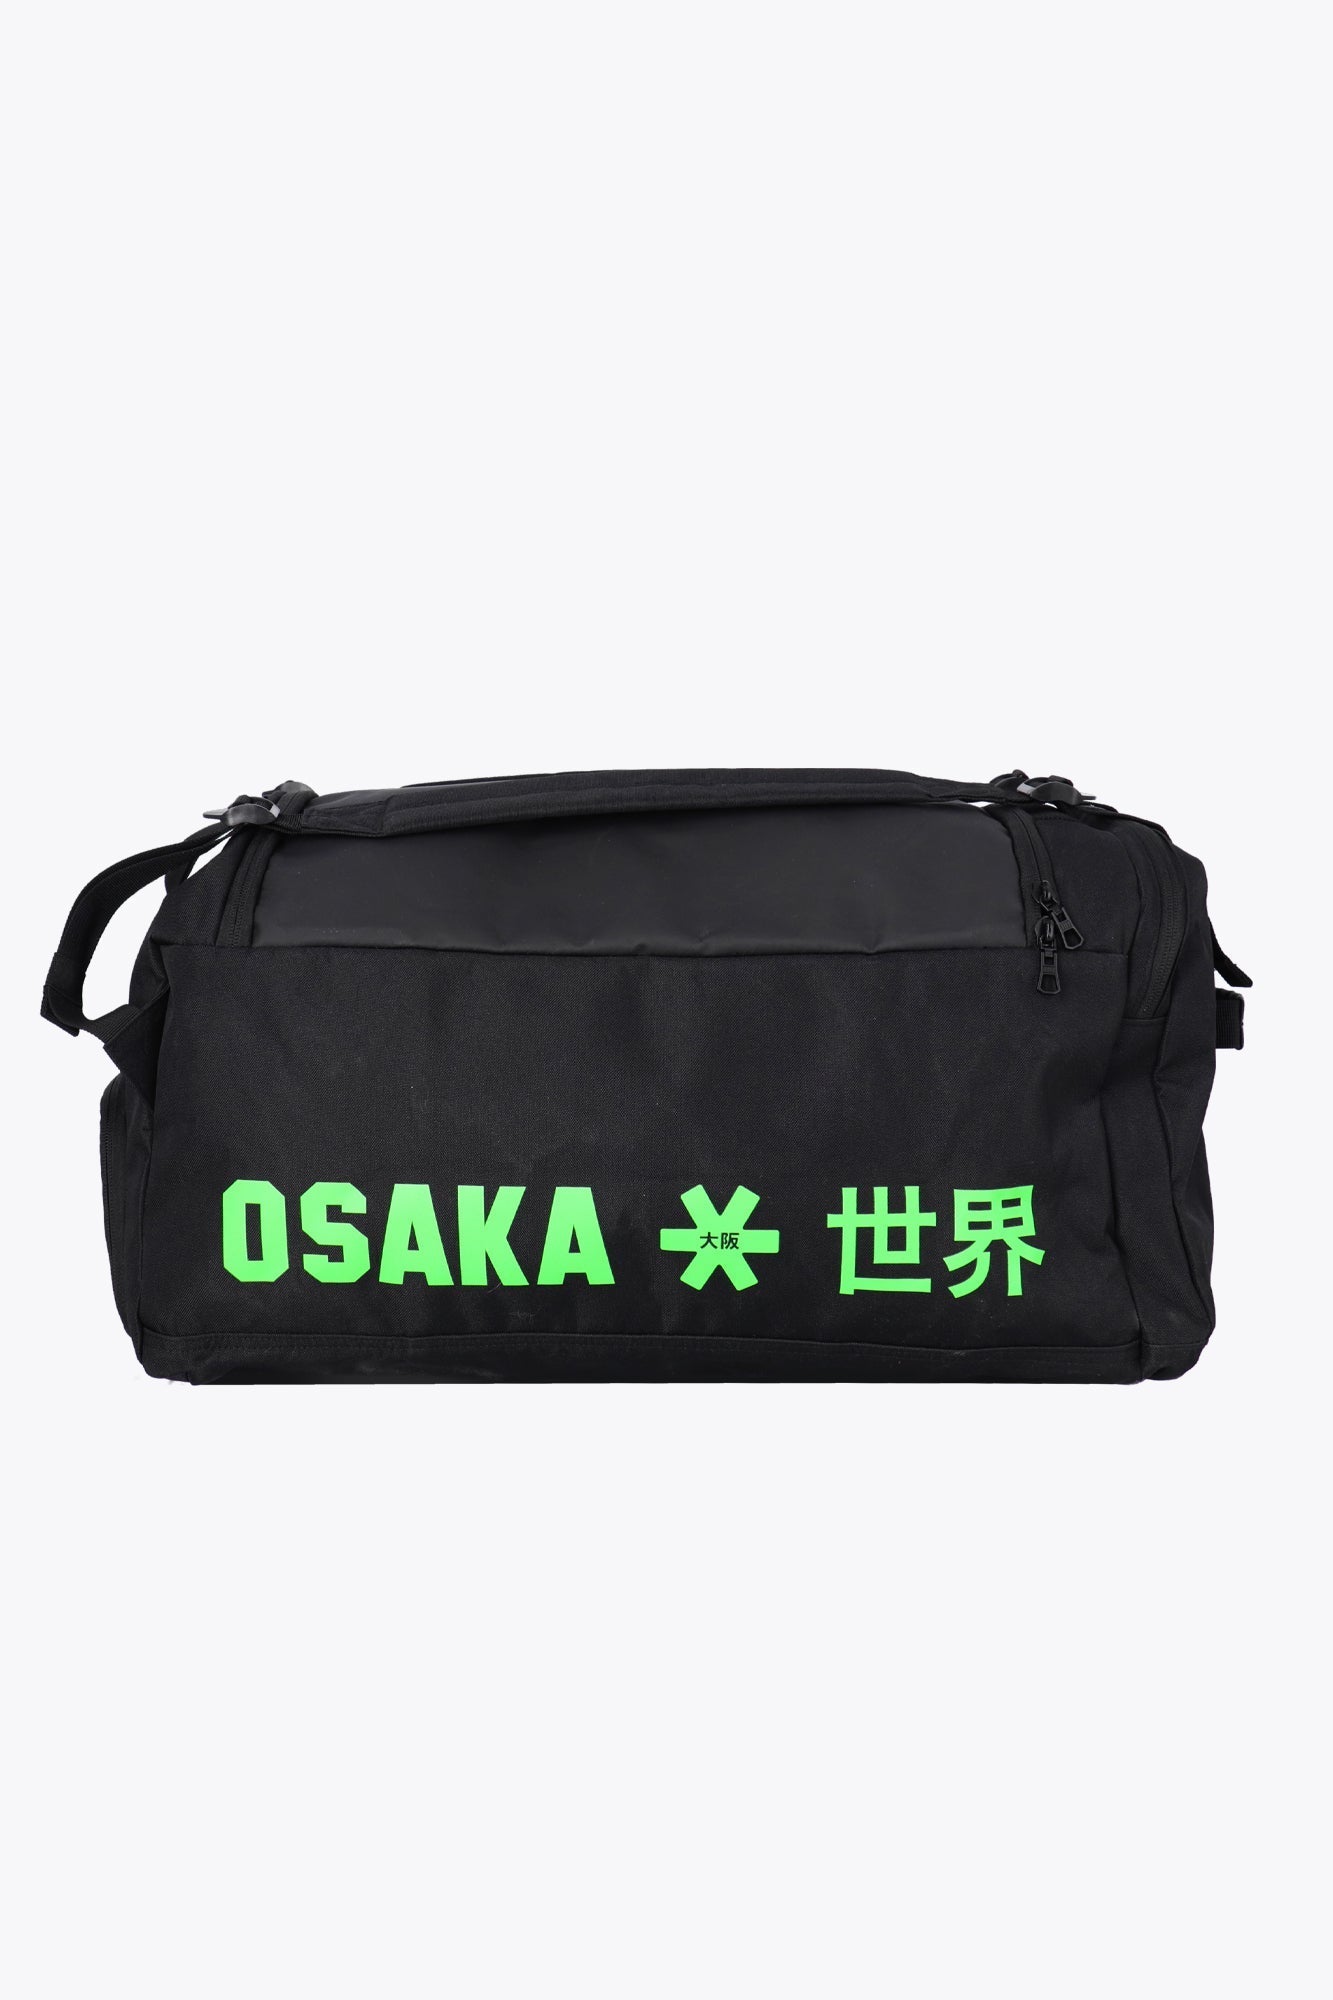 Osaka Sports Duffle Bag (Black/Green)